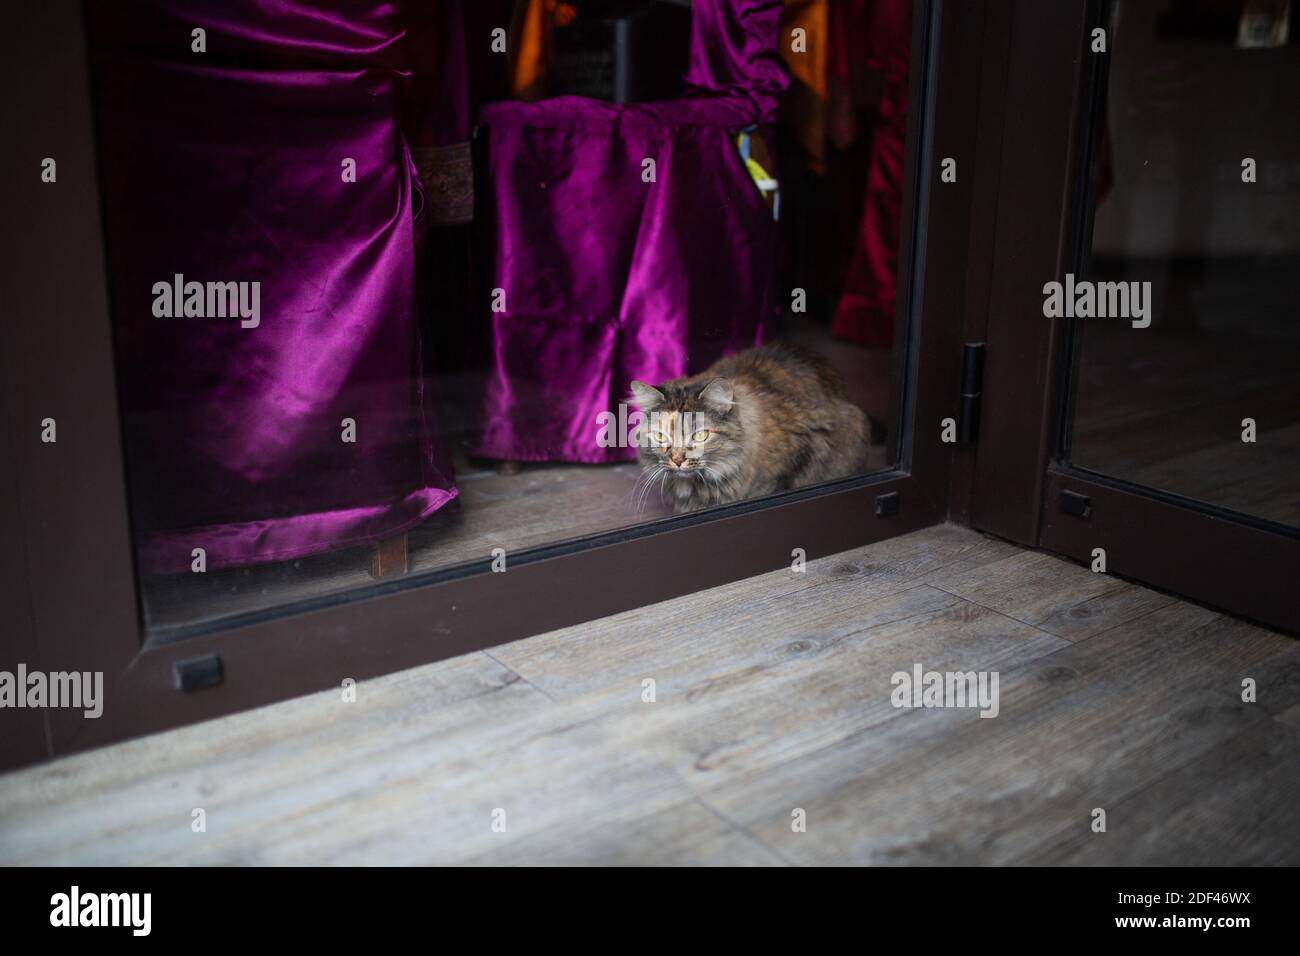 Cat in window paris immagini e fotografie stock ad alta risoluzione - Alamy